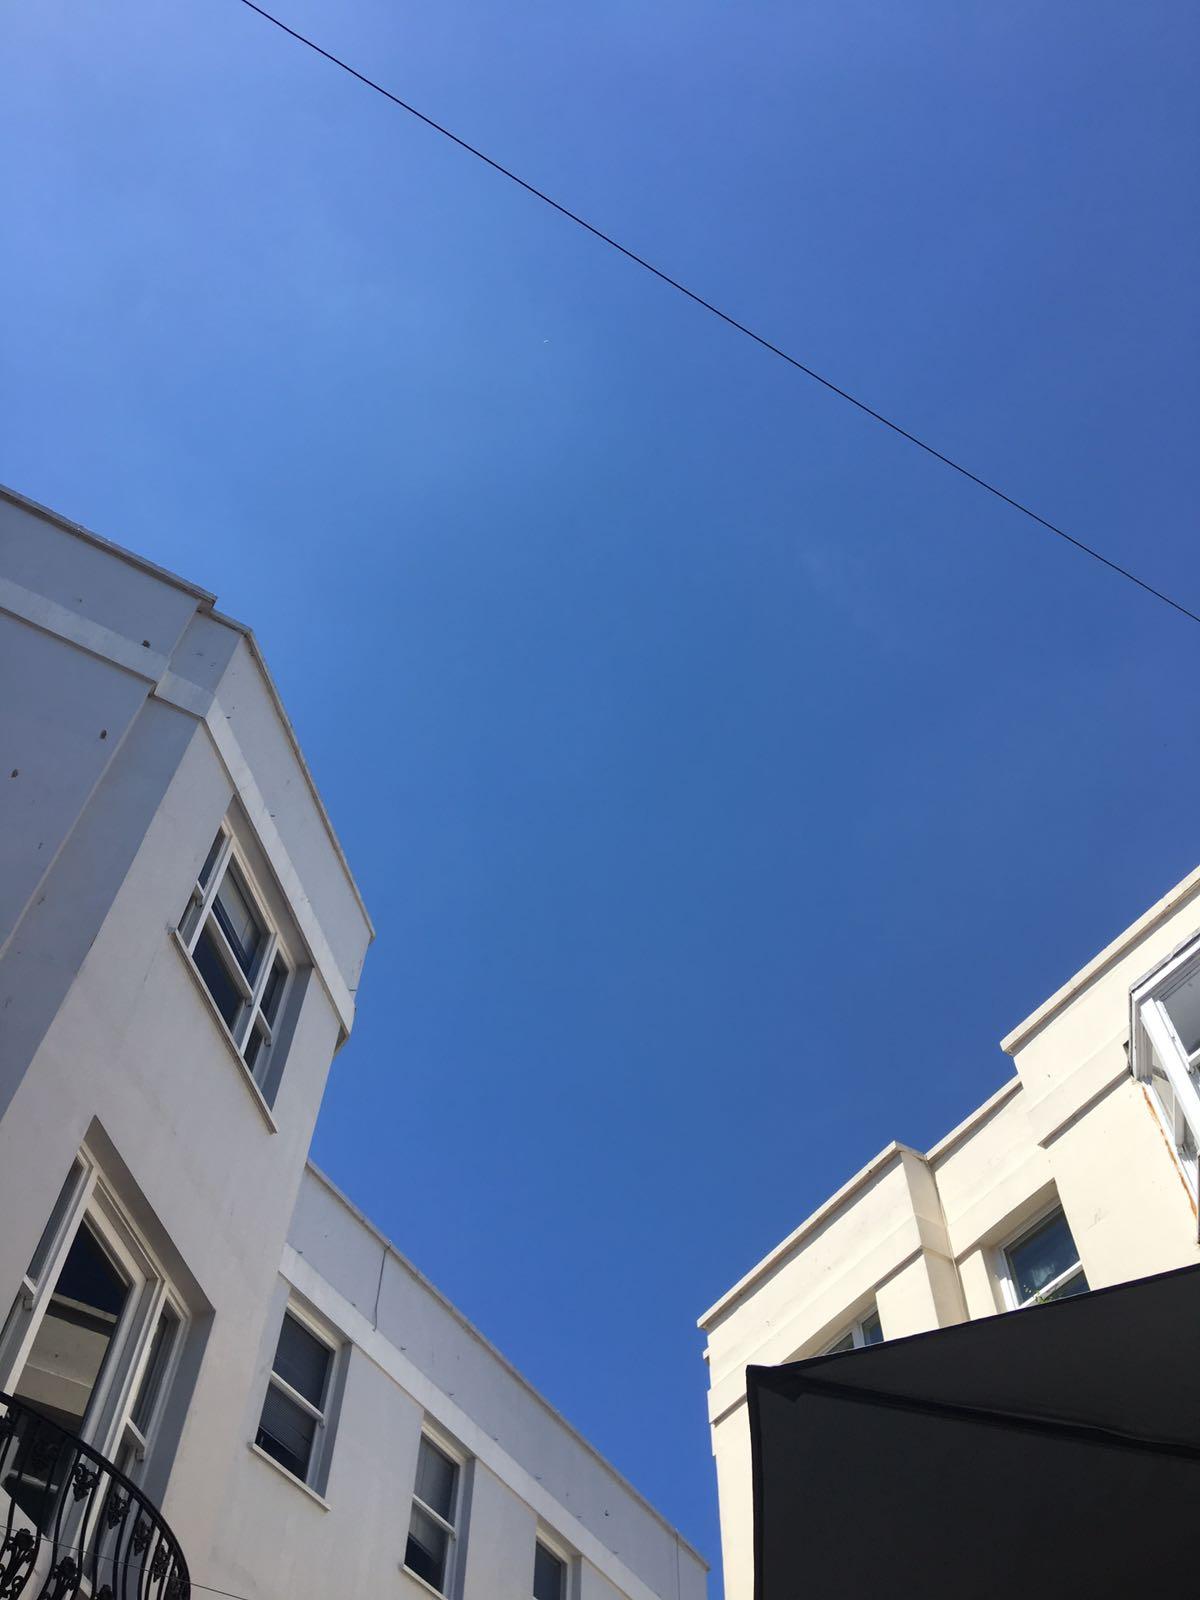 Blue sky over white houses.